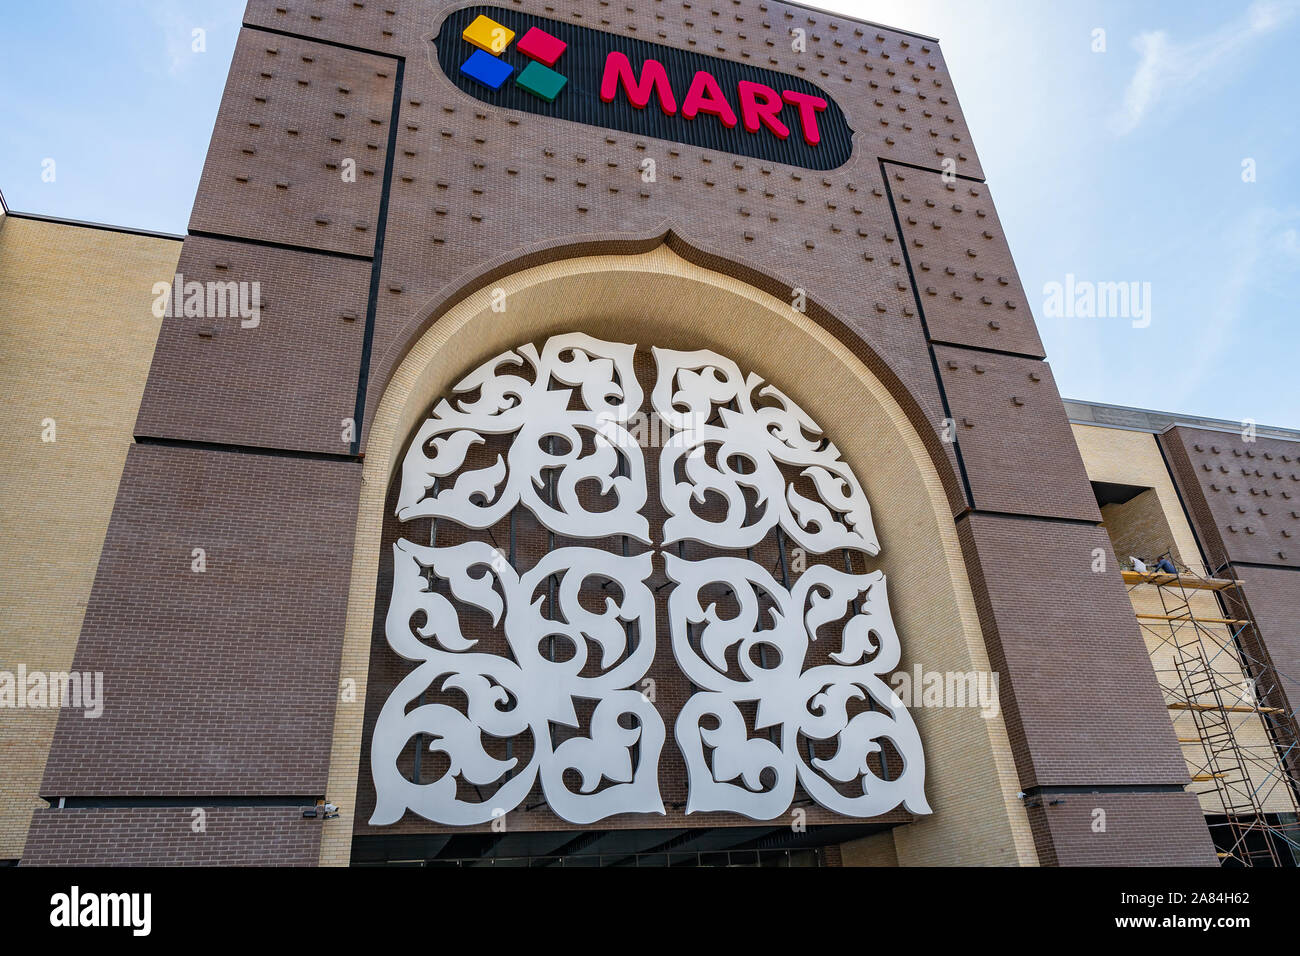 Taraz Mart Einkaufszentrum Magnum Supermarkt Werbung auf der Fassade des Gebäudes an einem sonnigen blauen Himmel Tag Stockfoto